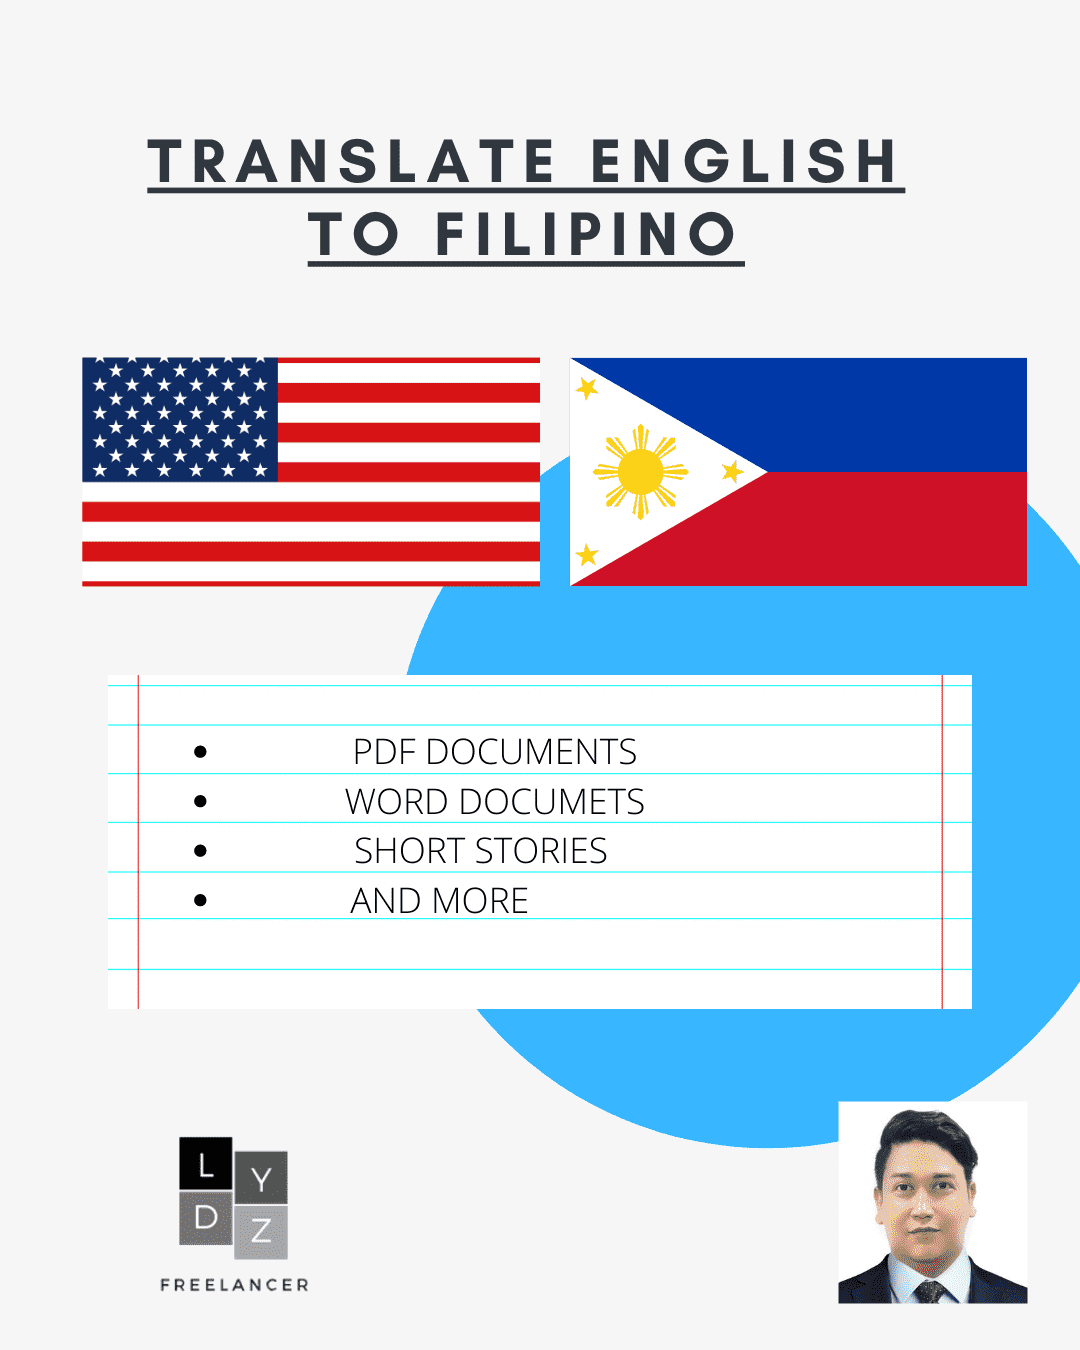 I will translate English language to Filipino language image 1